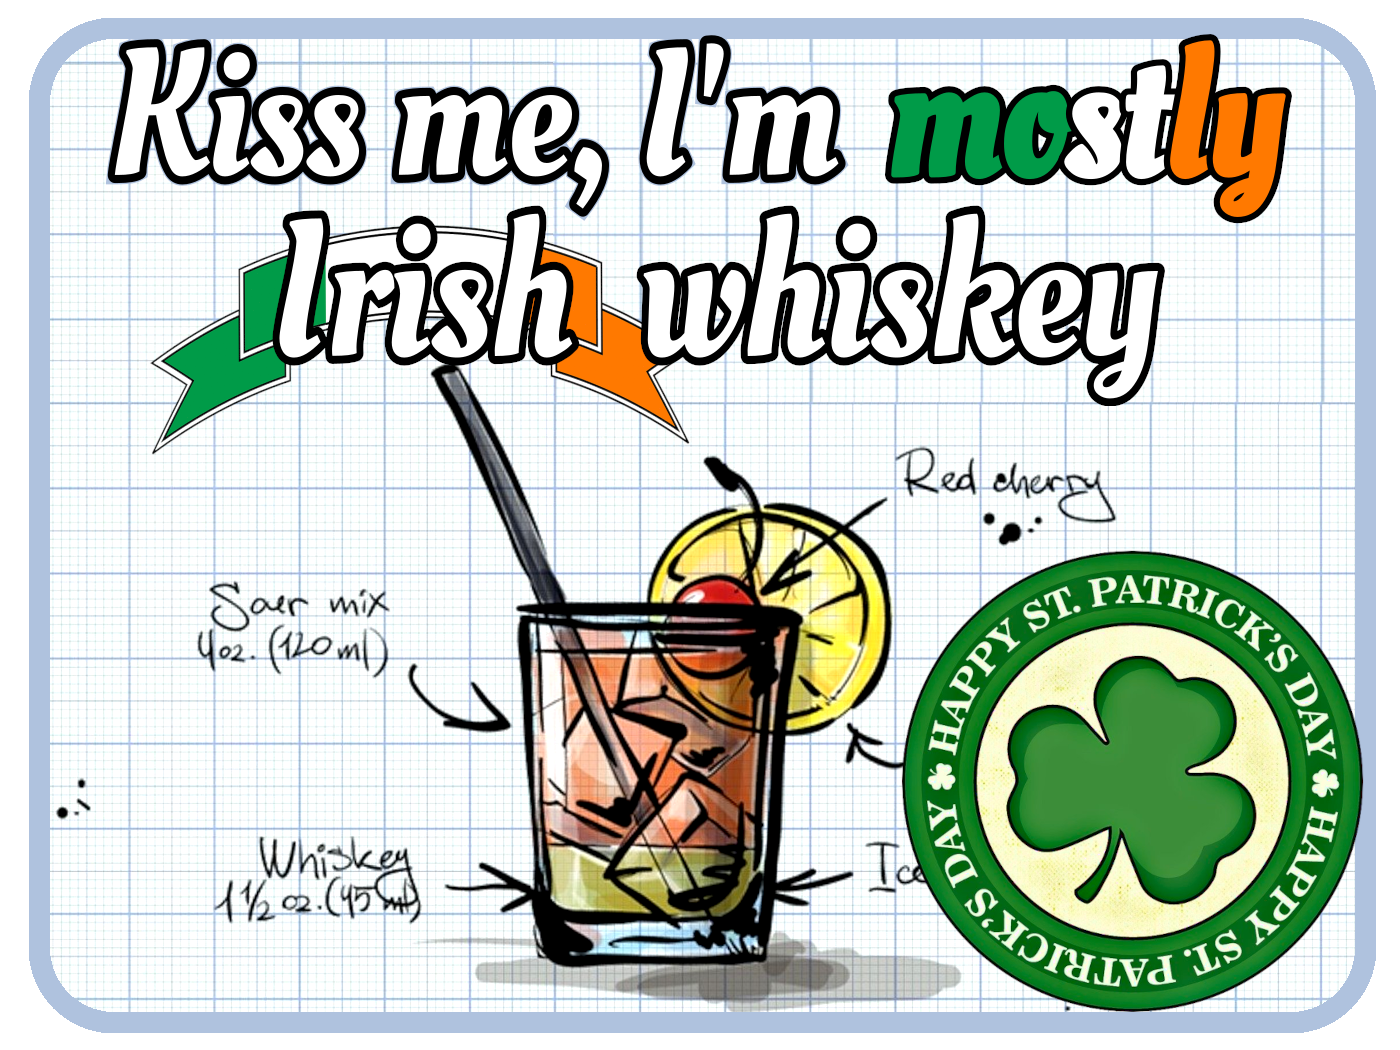 Mostly Irish Whiskey